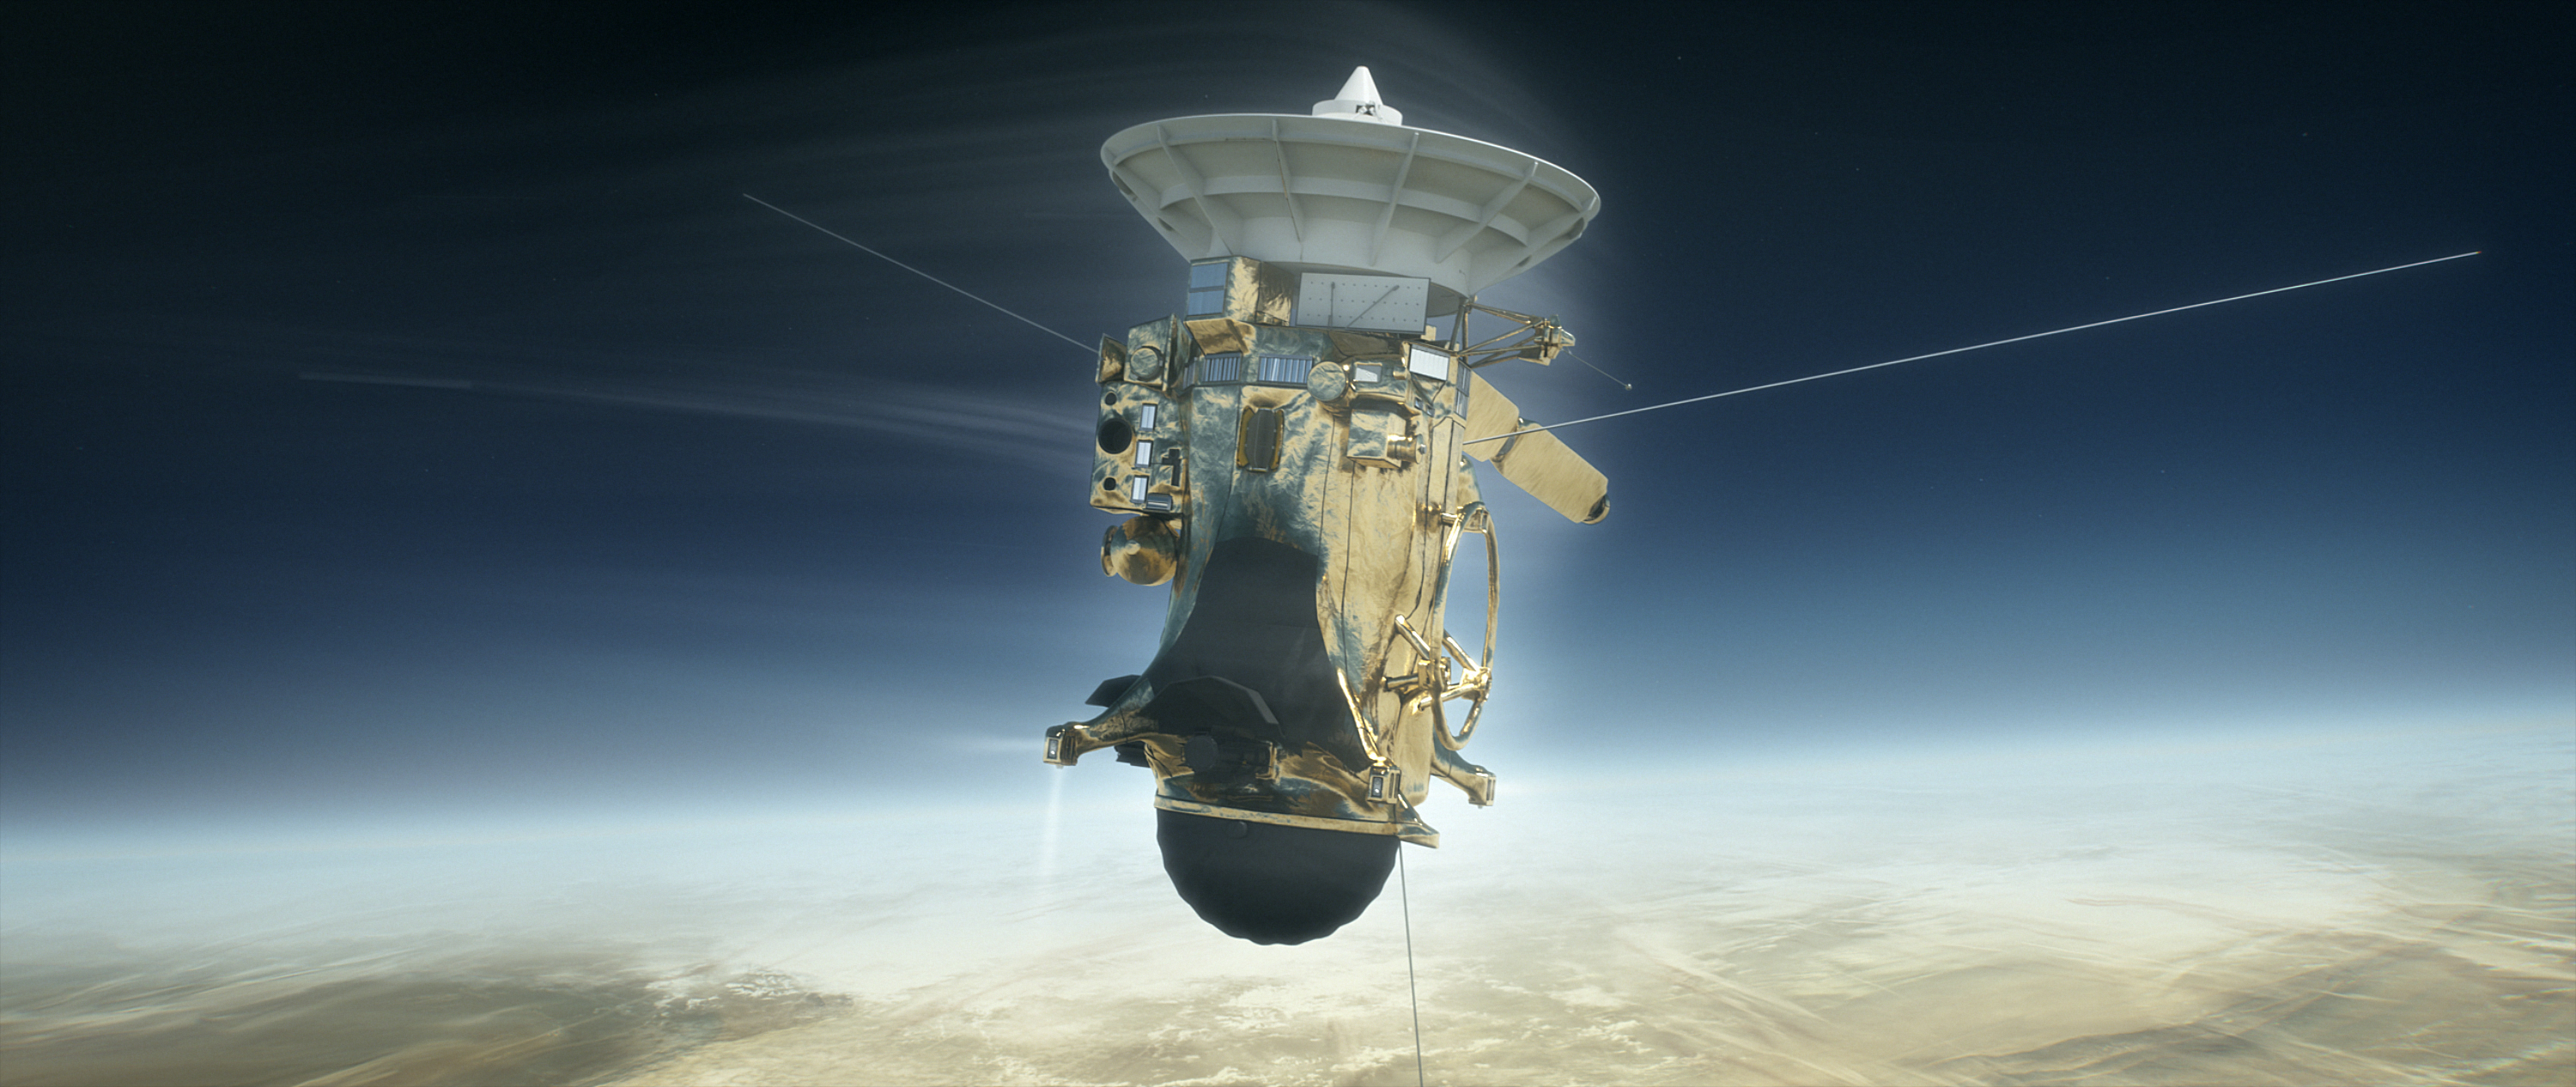 Cassini entering atmosphere